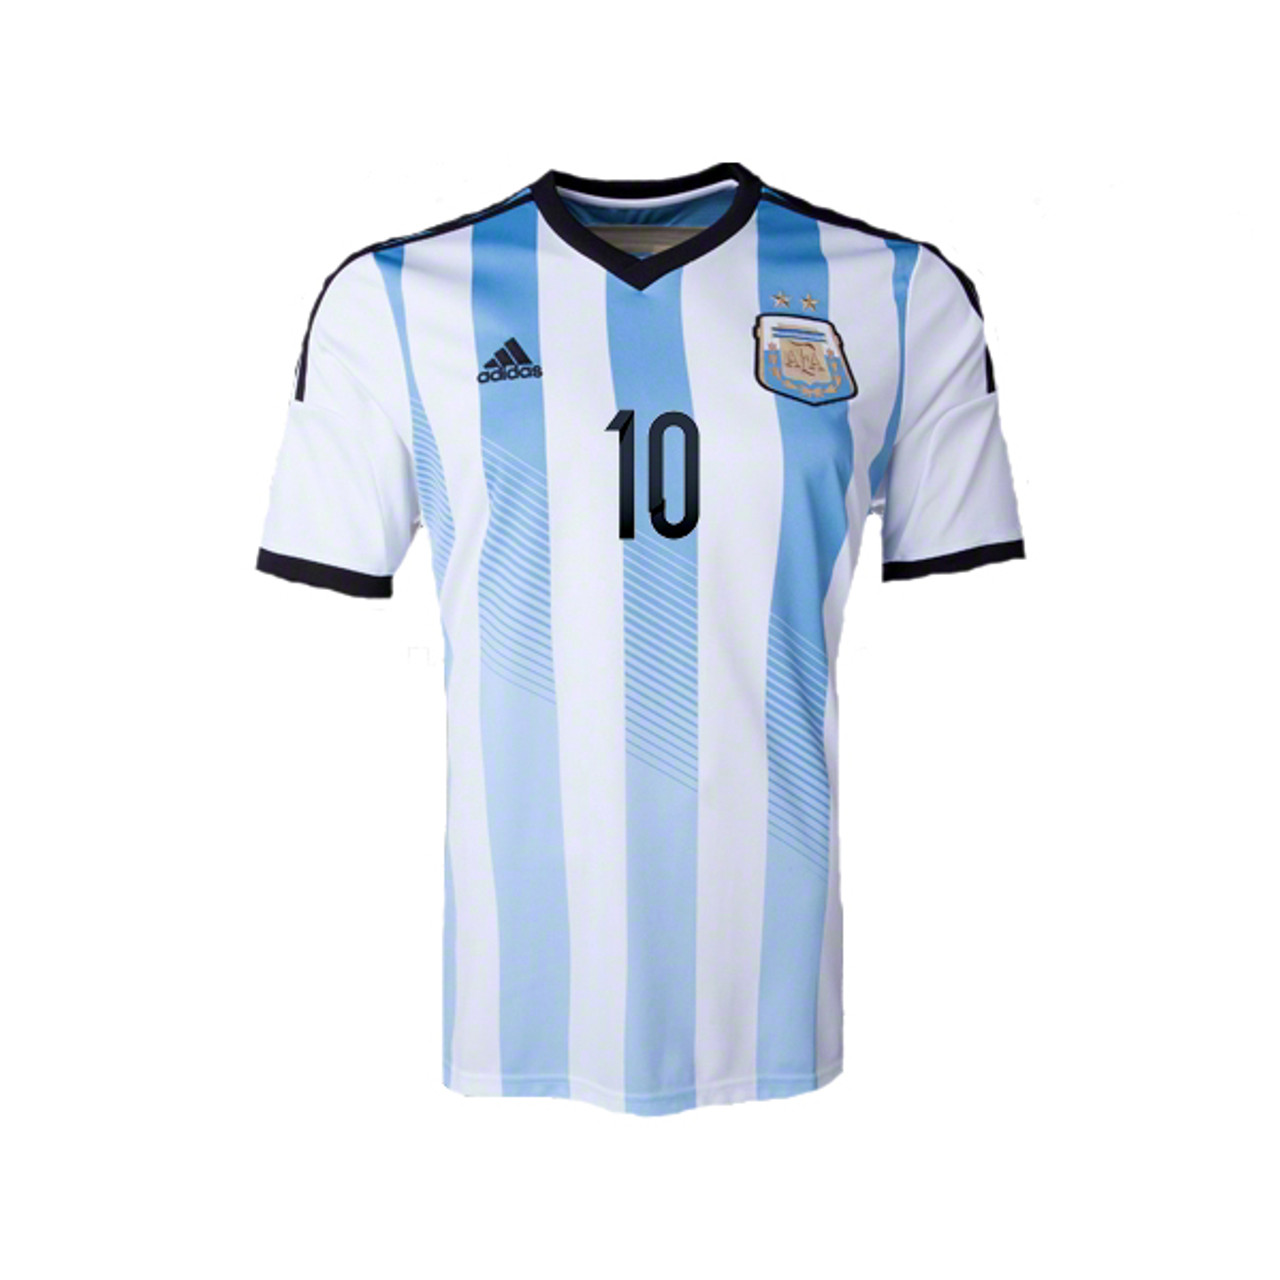 messi argentina away jersey 2014